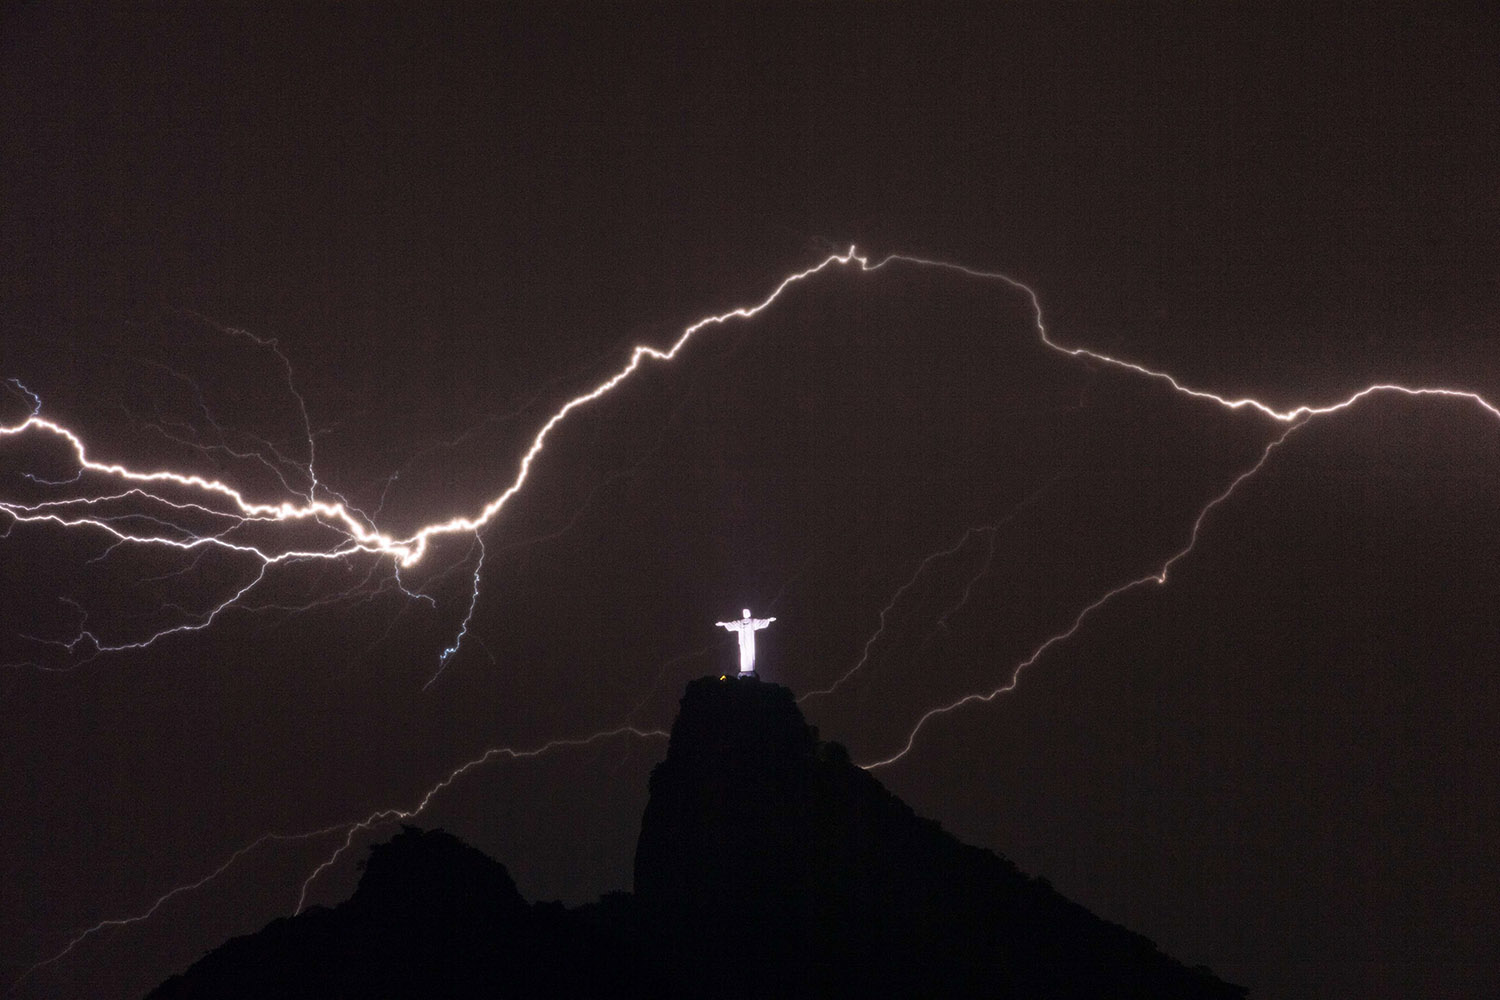 TOPSHOTS-BRAZIL-LIGHTNING-CHRIST THE REDEEMER